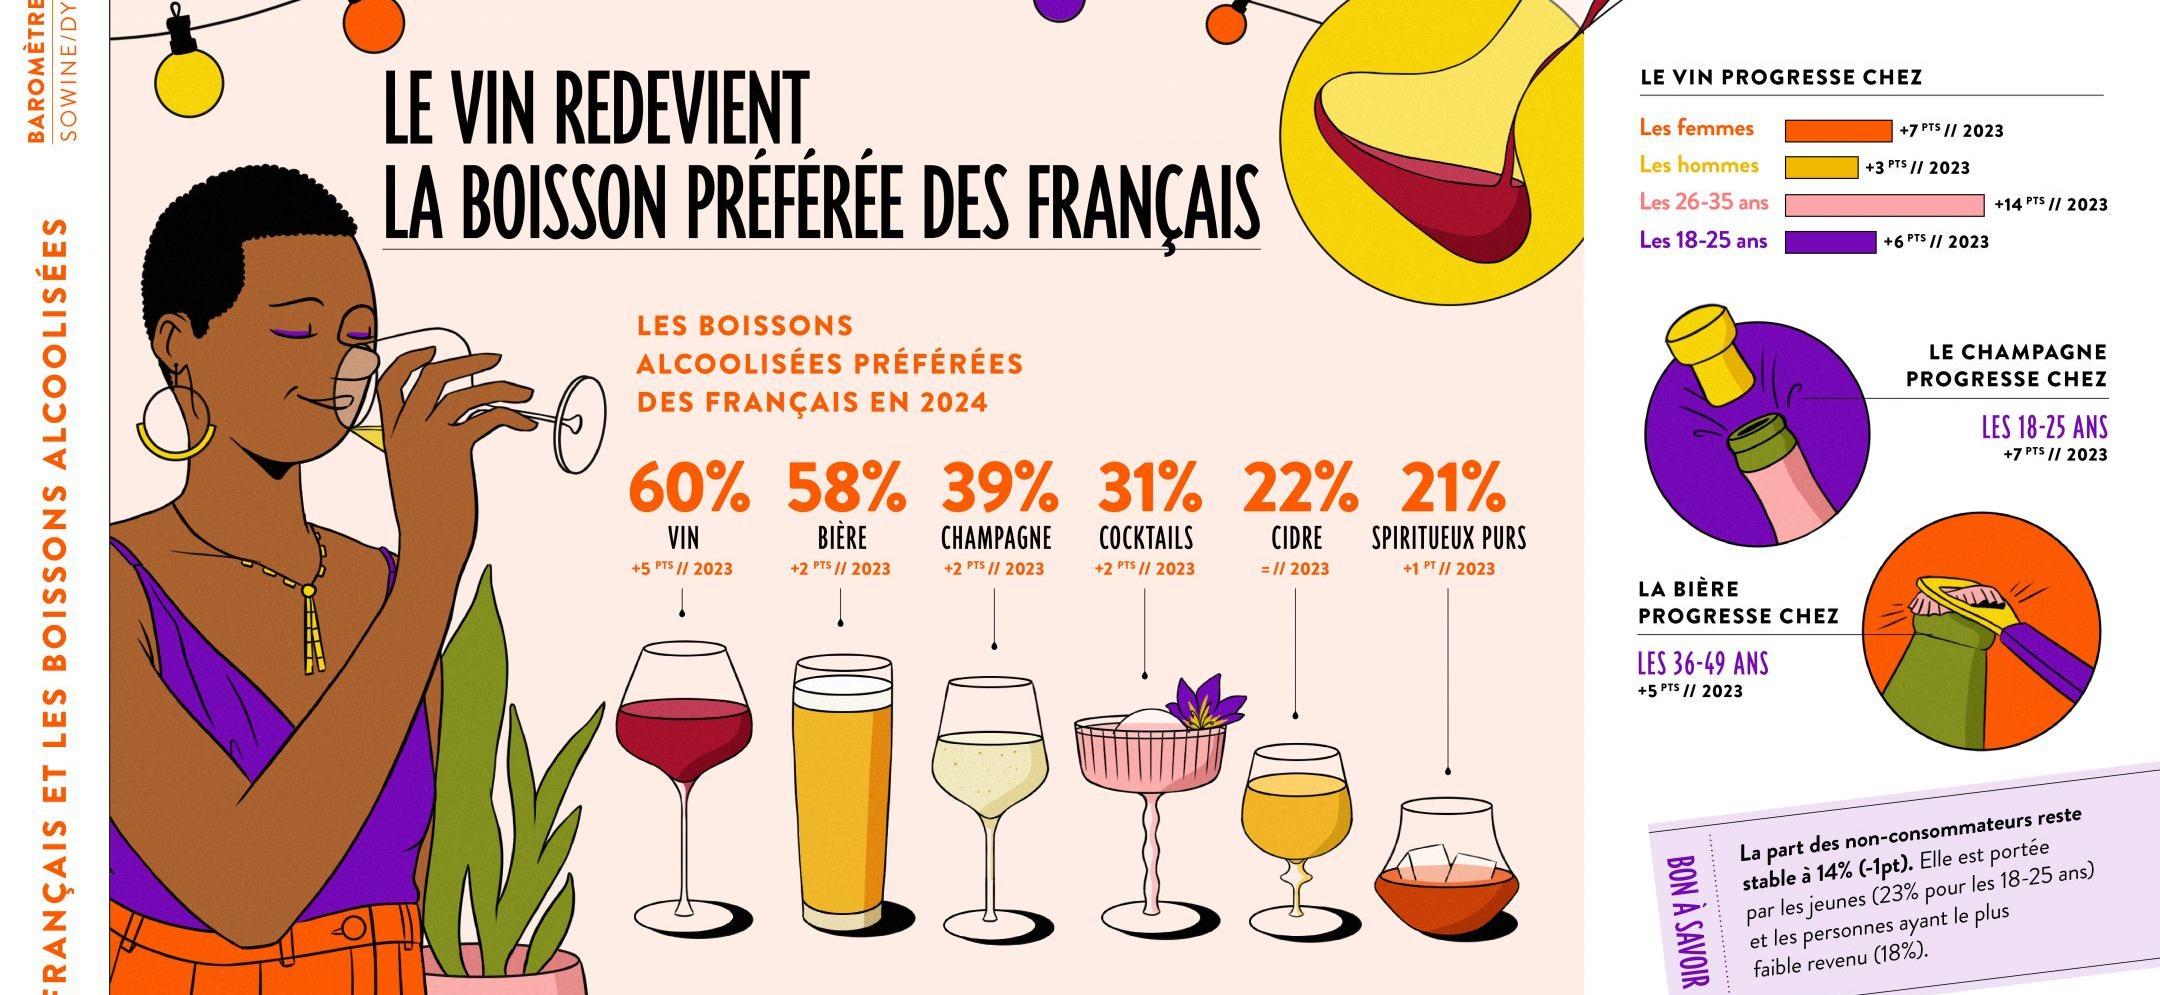 Le vin redevient la boisson préférée des Français